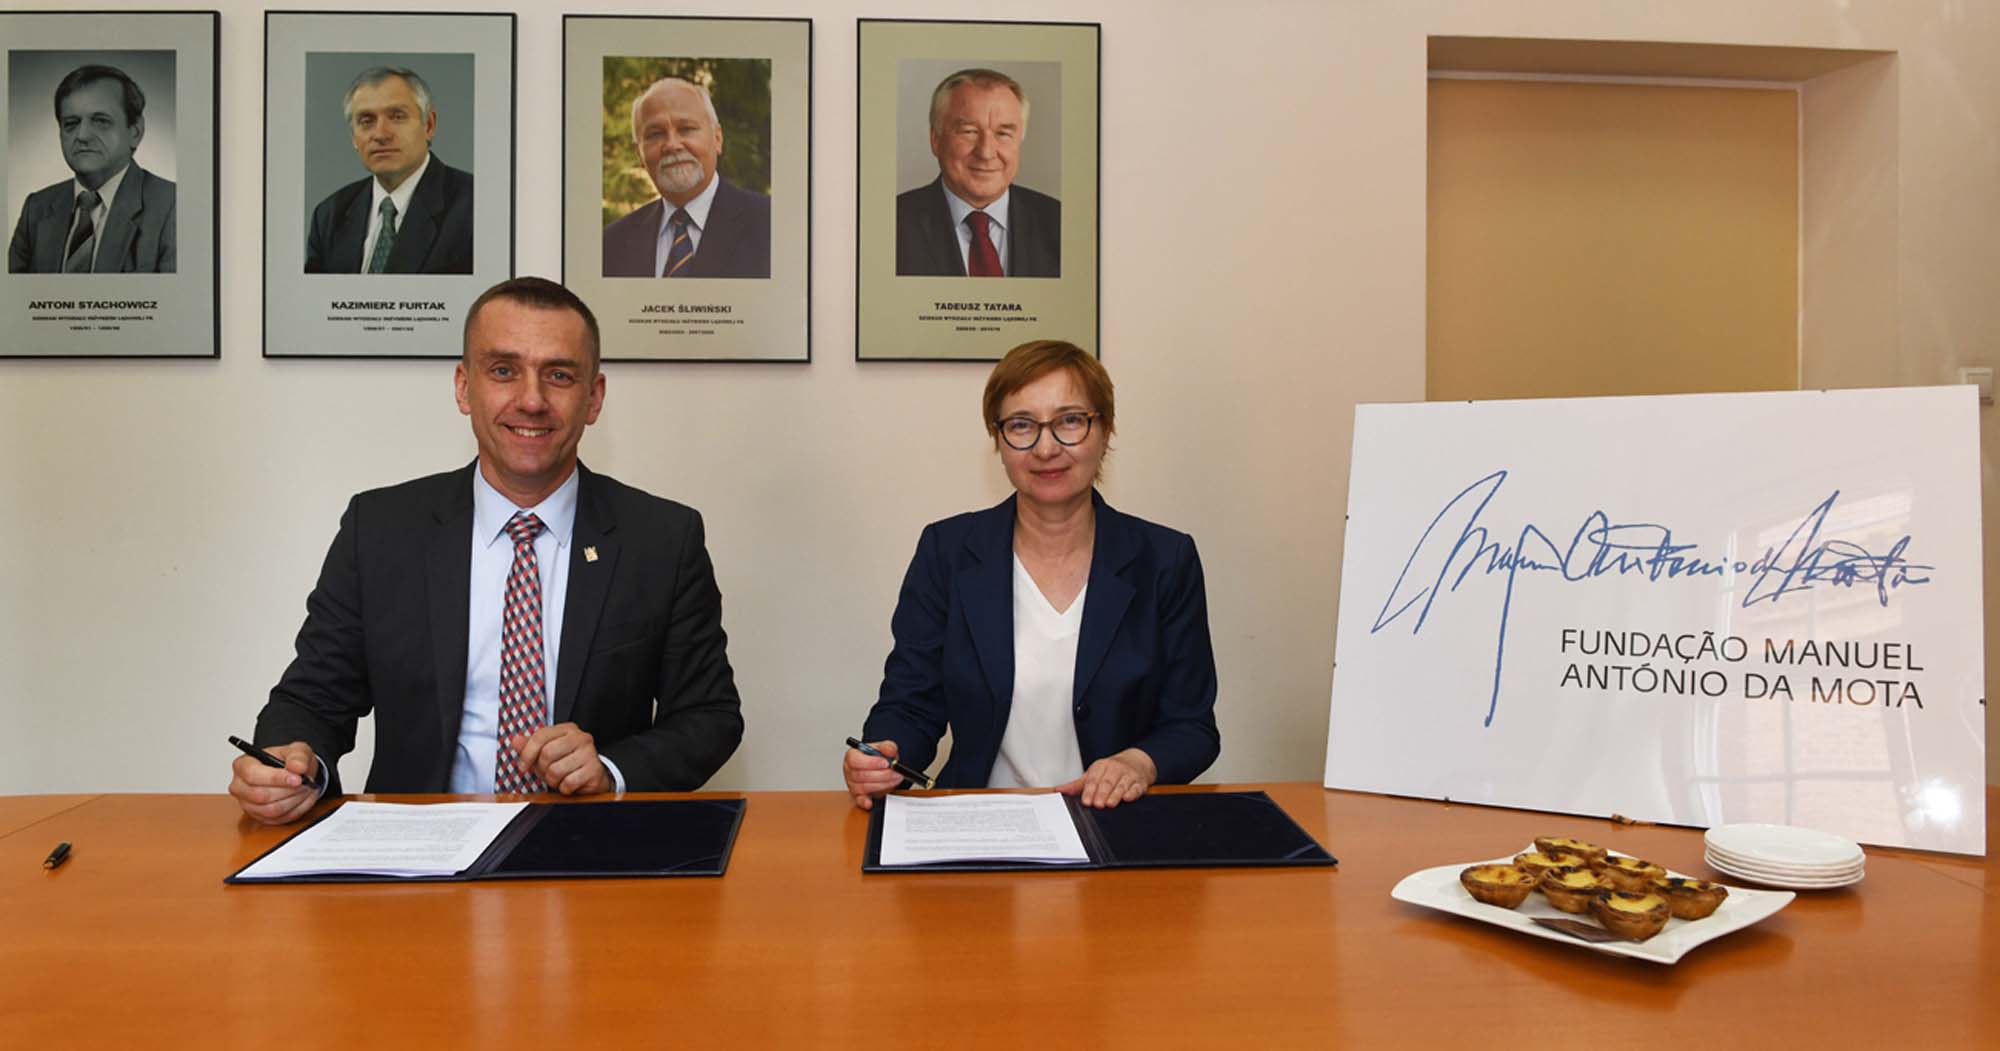 Dziekan WIL prof. Andrzej Szarata i pełnomocnik Fundacji Manuel António da Mota Izabela Ciemięga podpisują porozumienie dotyczące stypendiów dla studentów z Ukrainy